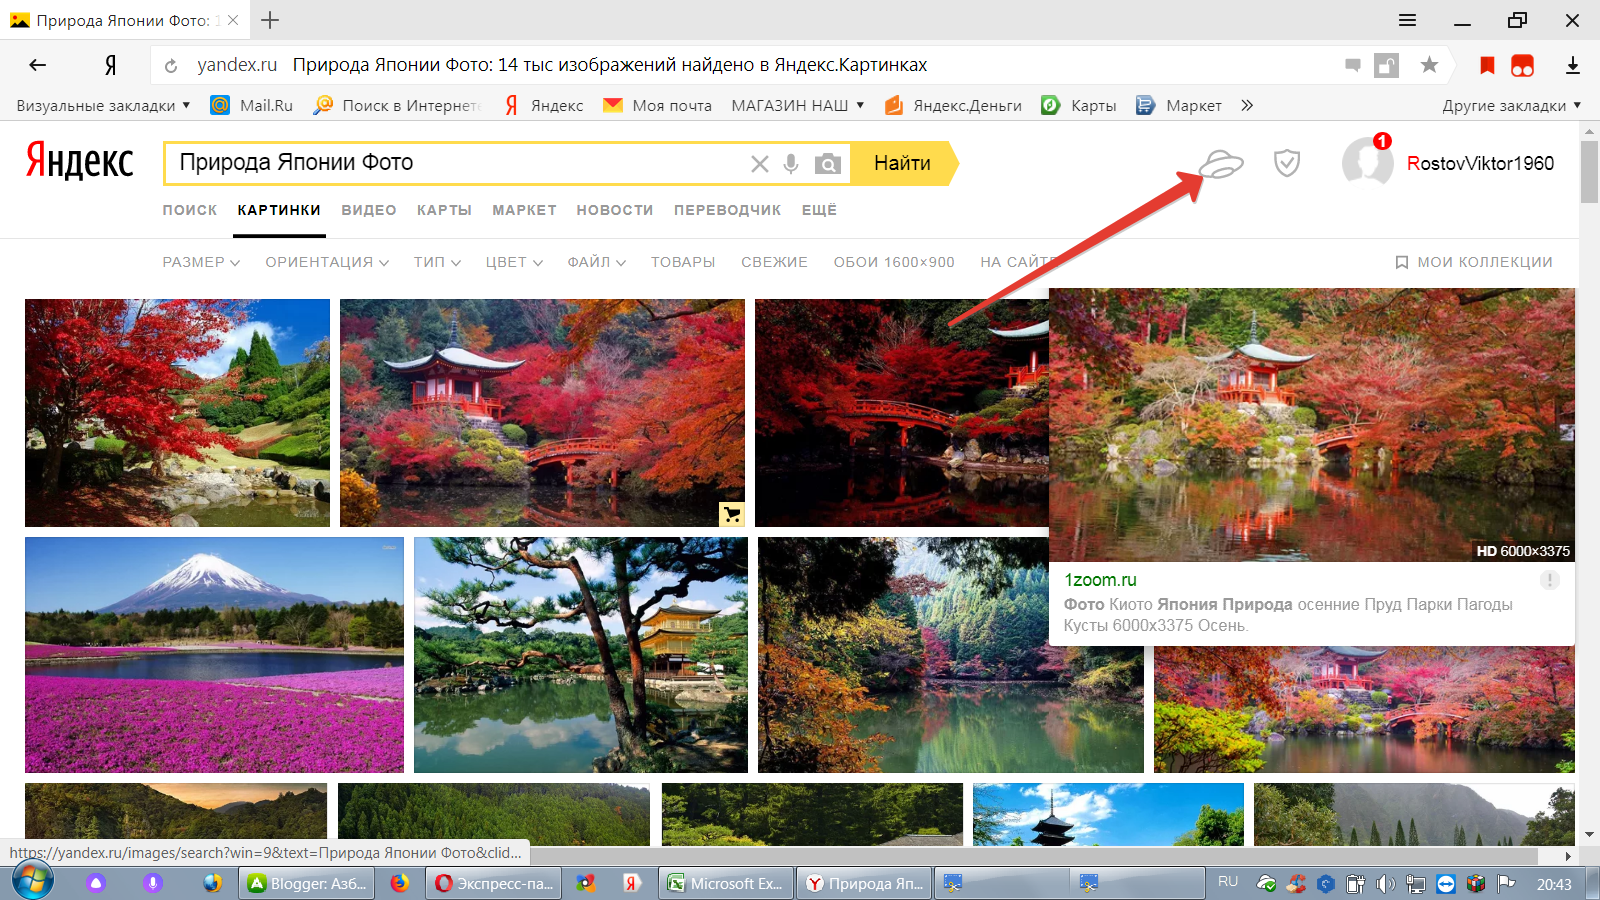 Поиск по фото загрузить картинку. Искать похожие изображения по картинке. Яндекс картинки. Яндекс картинки поиск. Поиск по картинке Яндекс.